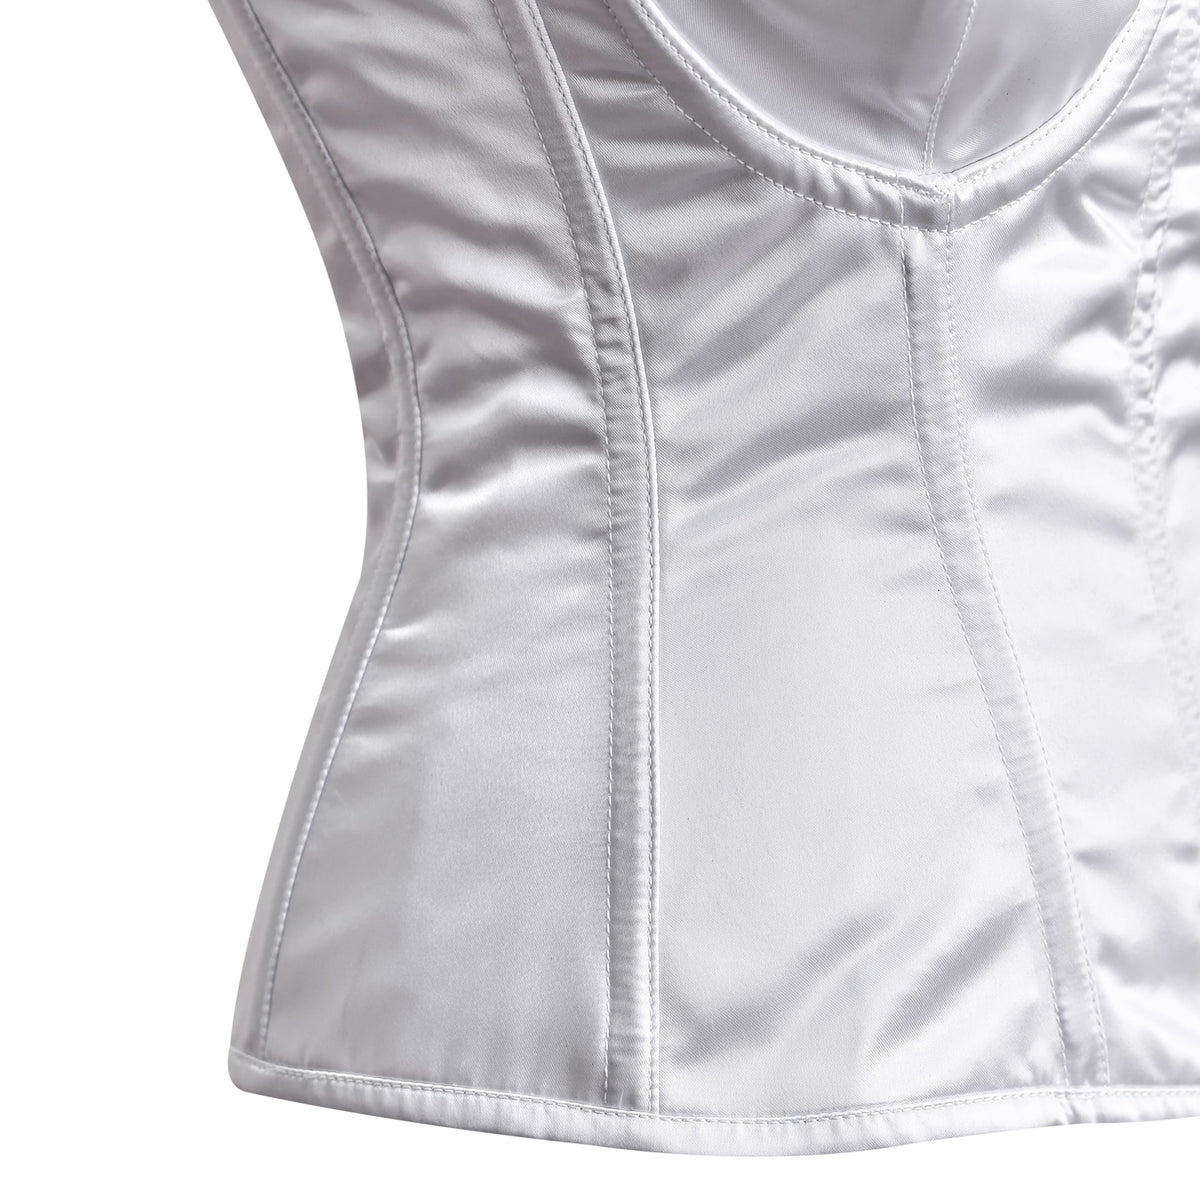 White Satin corset top